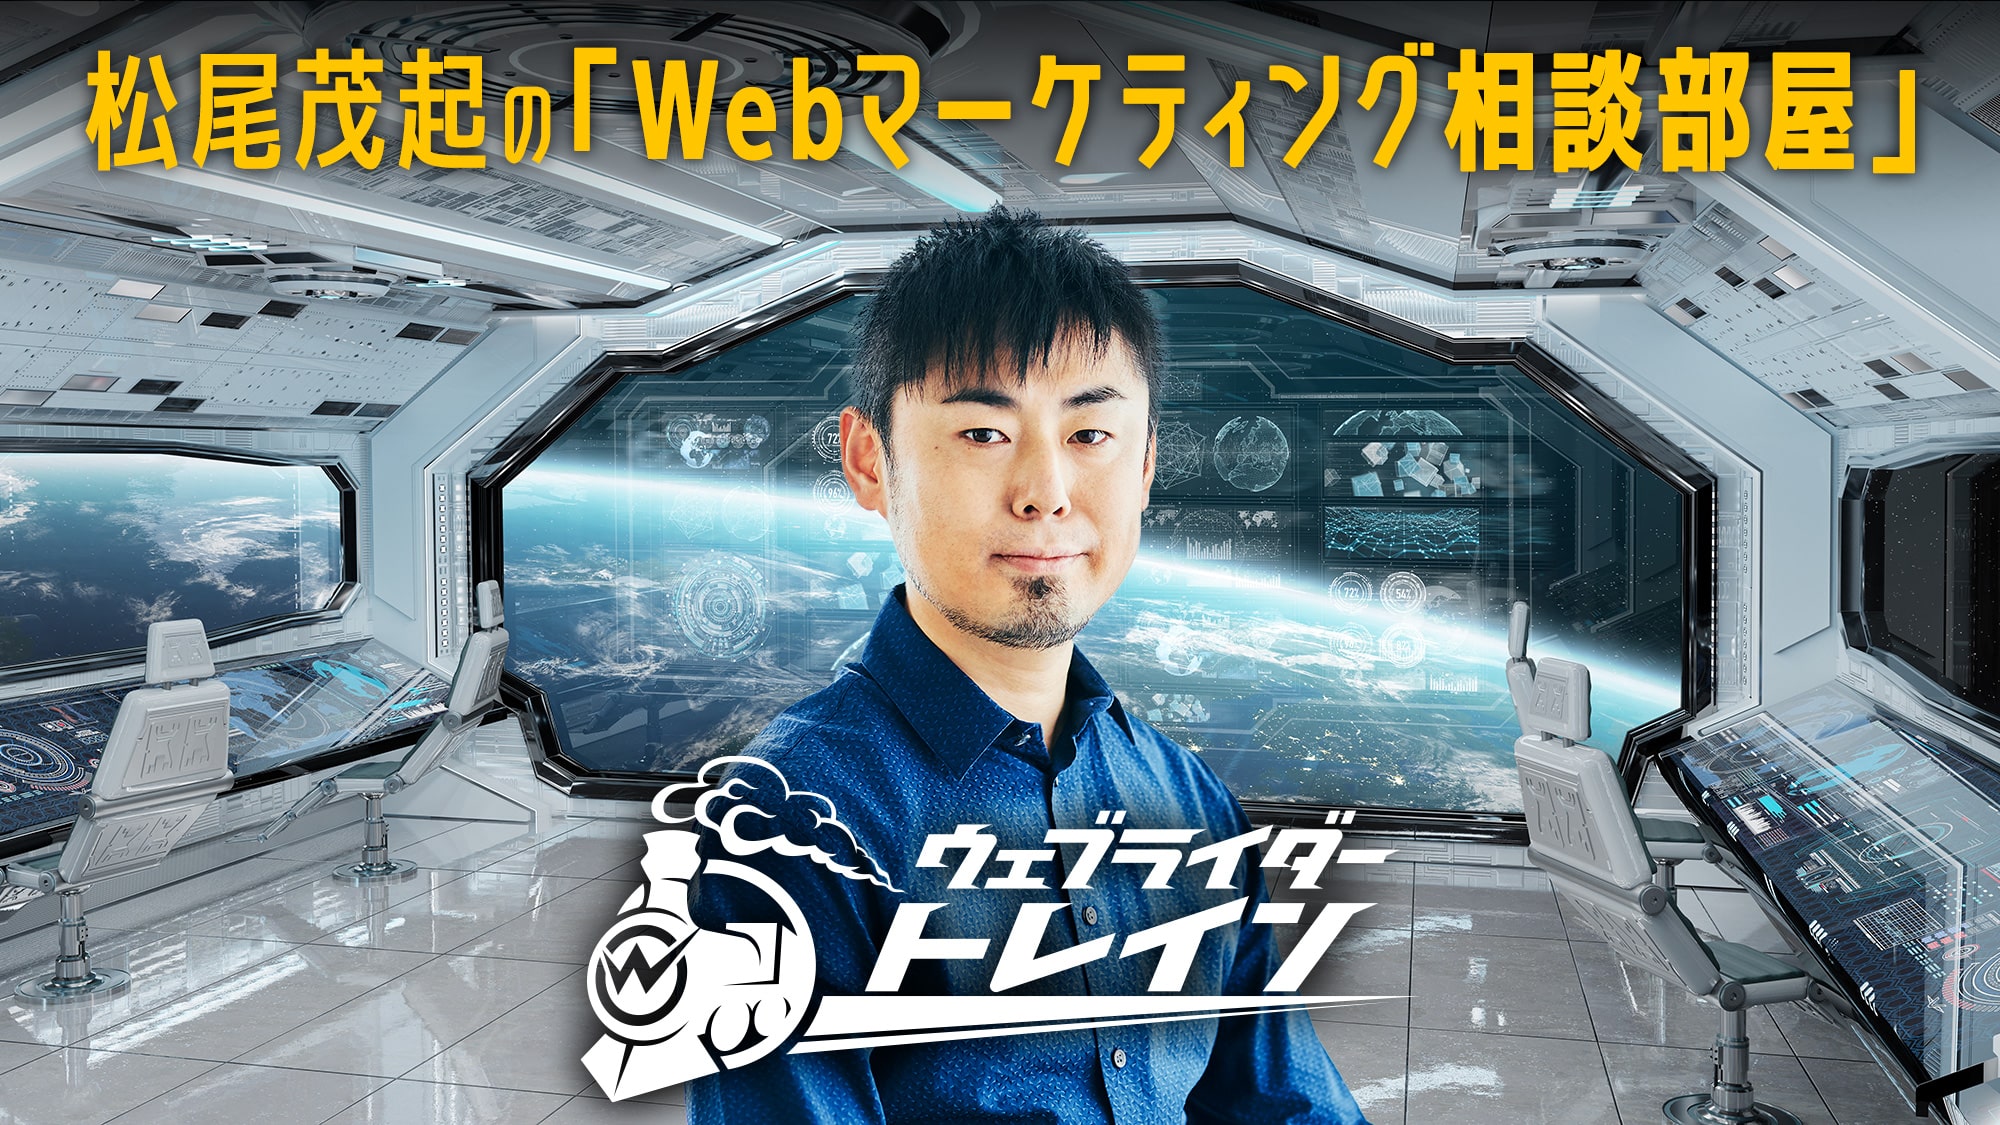 松尾茂起のWebマーケティング相談部屋のアイキャッチ画像